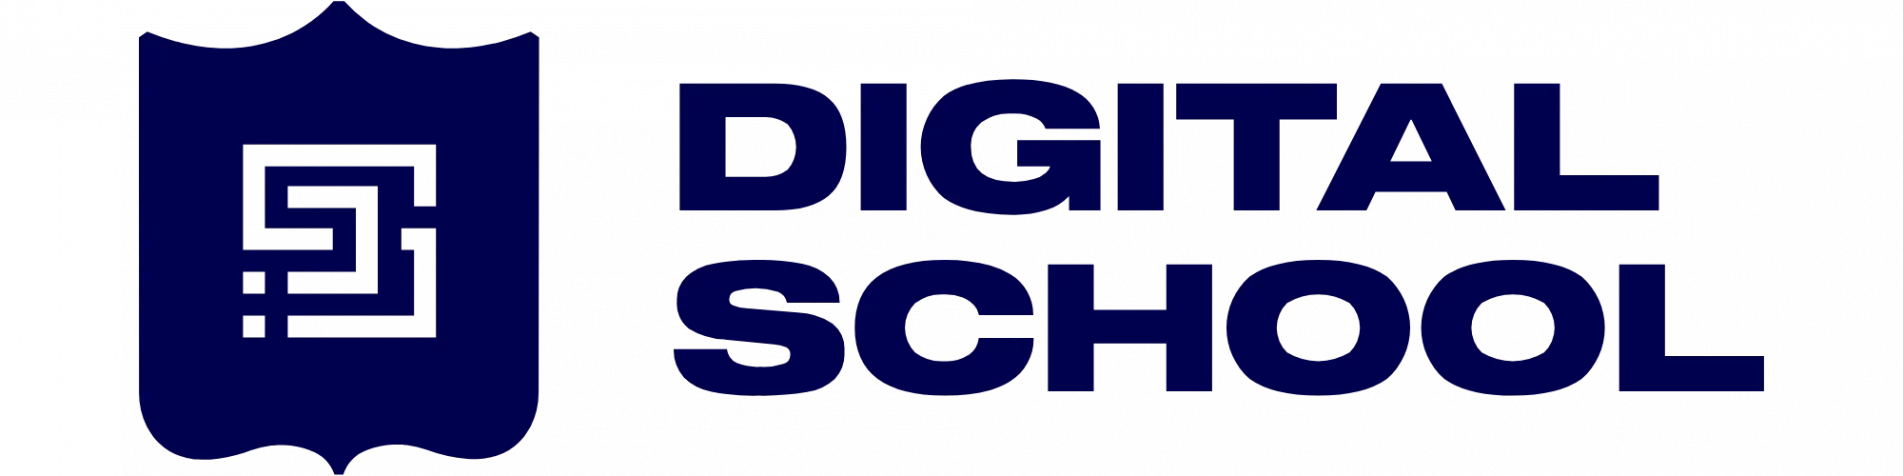 school-logo-blog